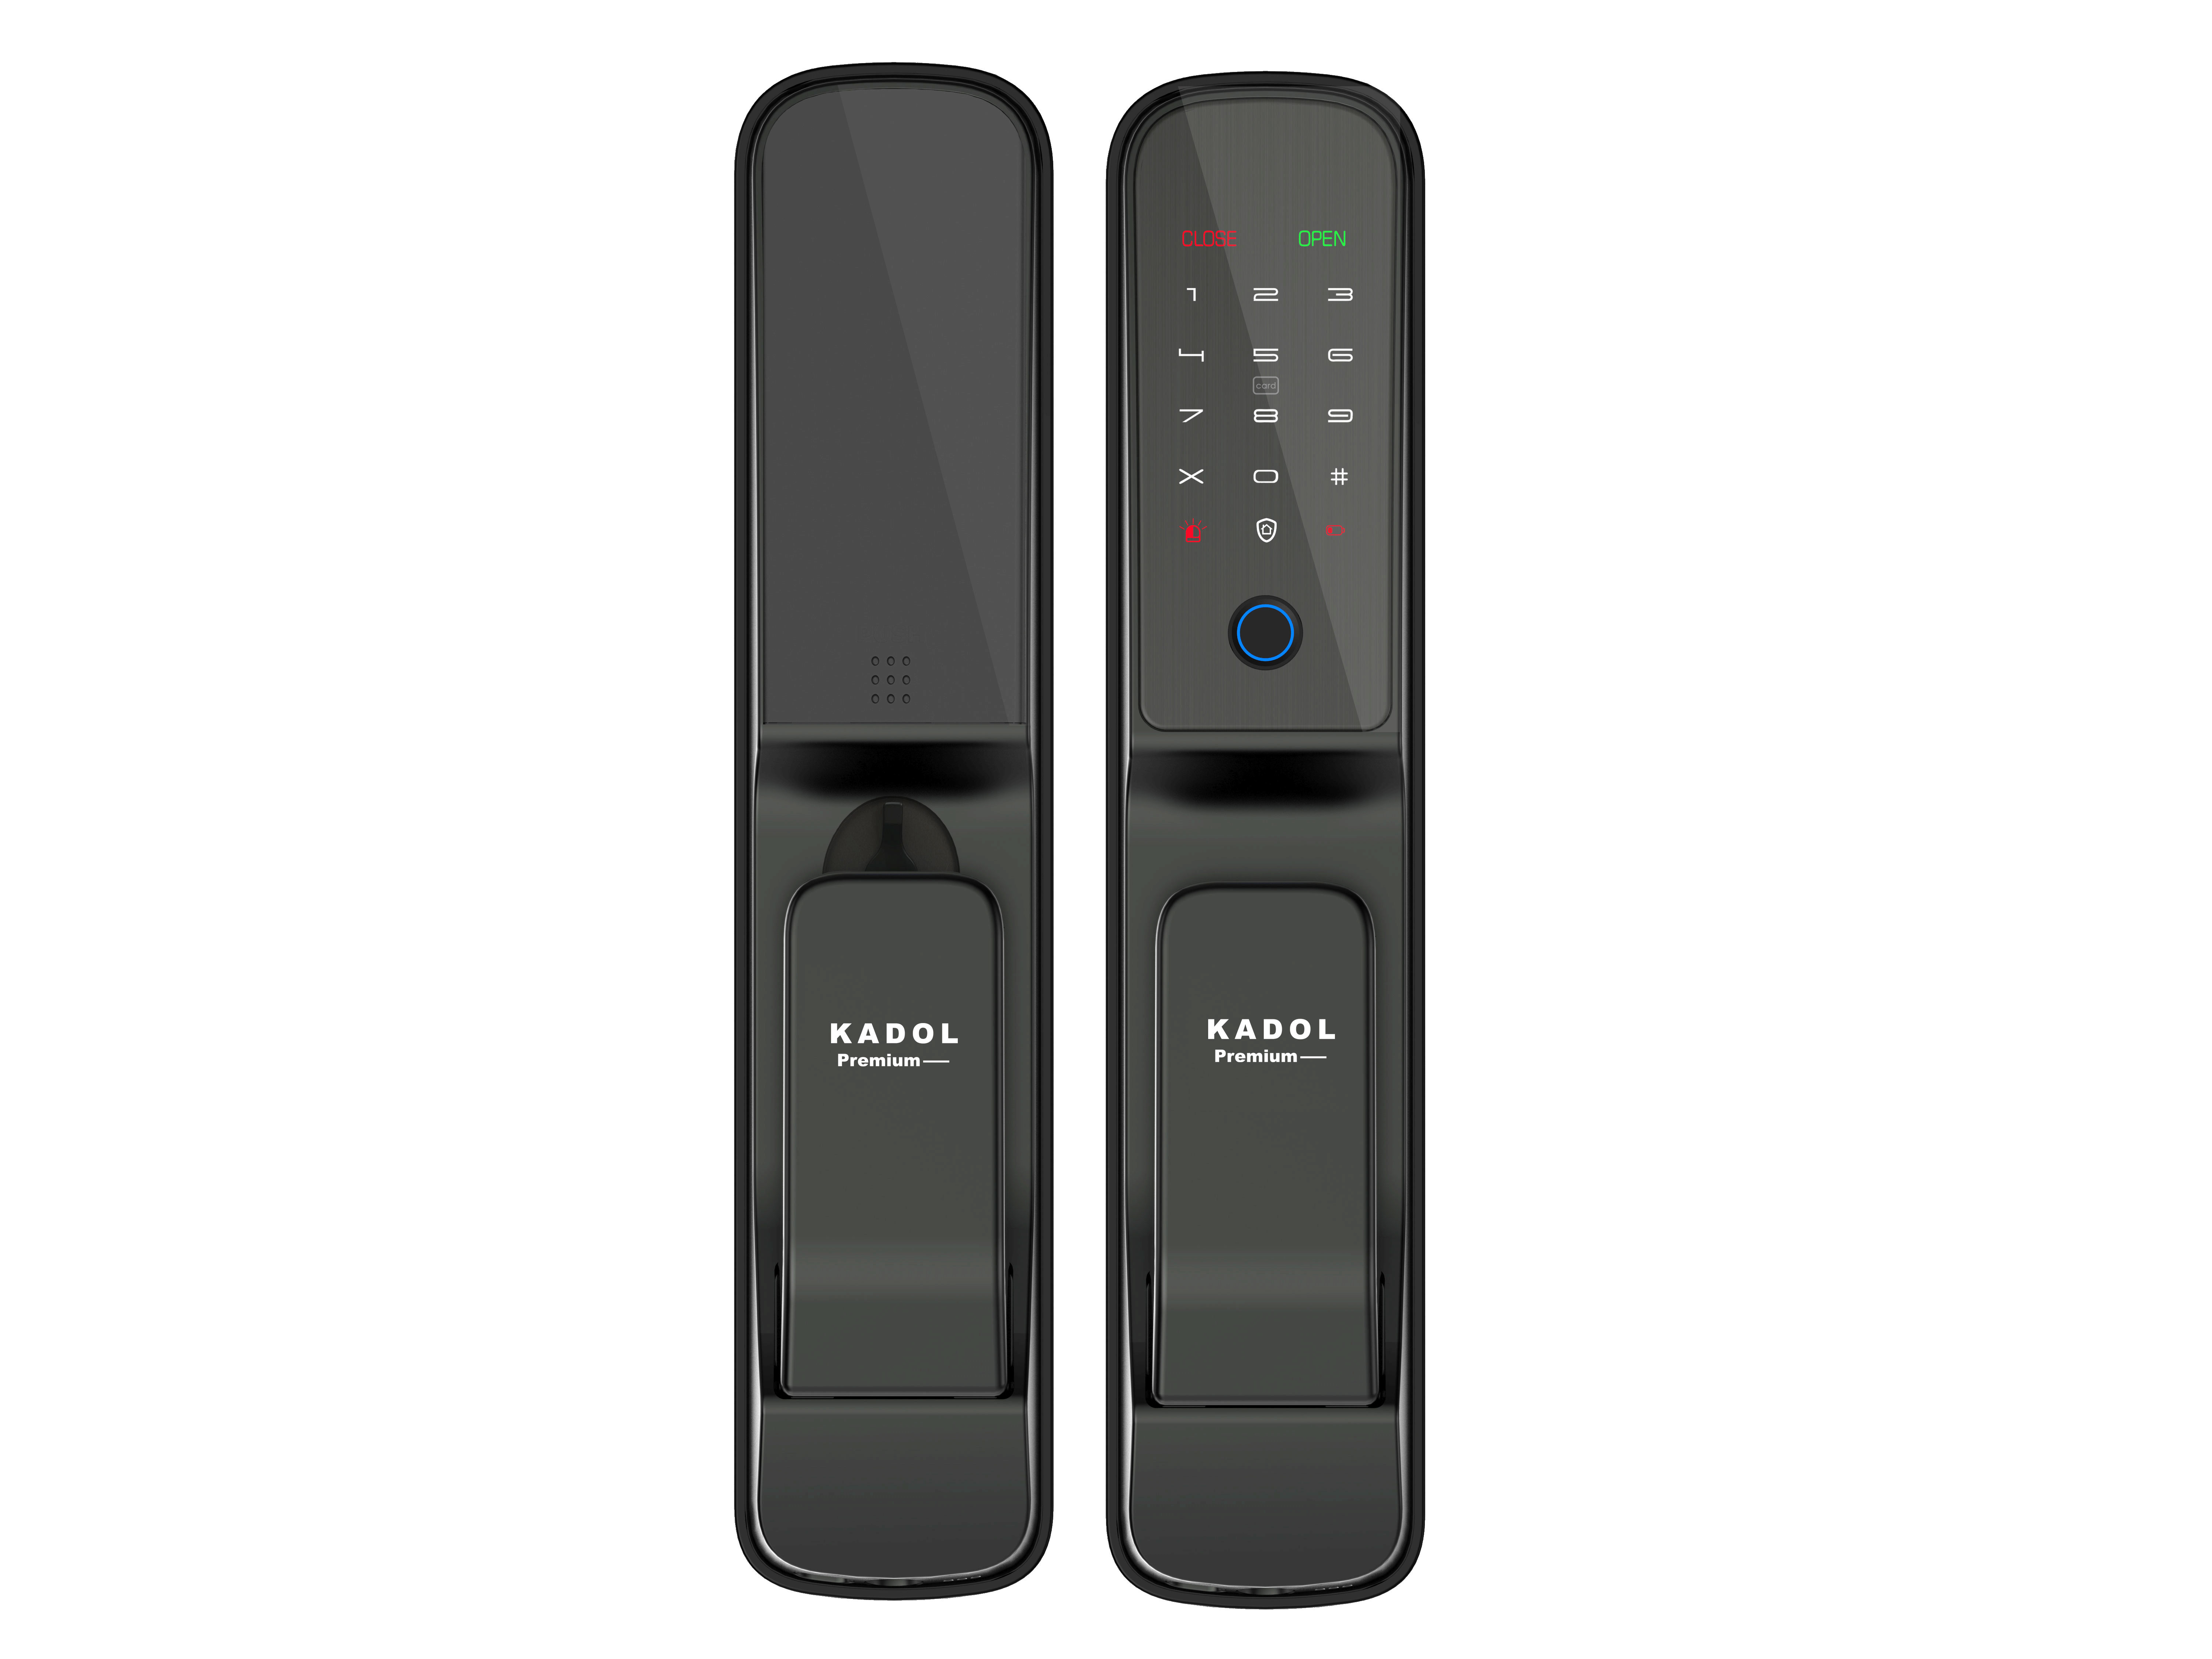 Khóa cửa thông minh Kadol ứng dụng công nghệ FPC Thụy Điển hiện đại, mang lại nhiều tiện ích, tăng cường an ninh cho căn nhà của bạn